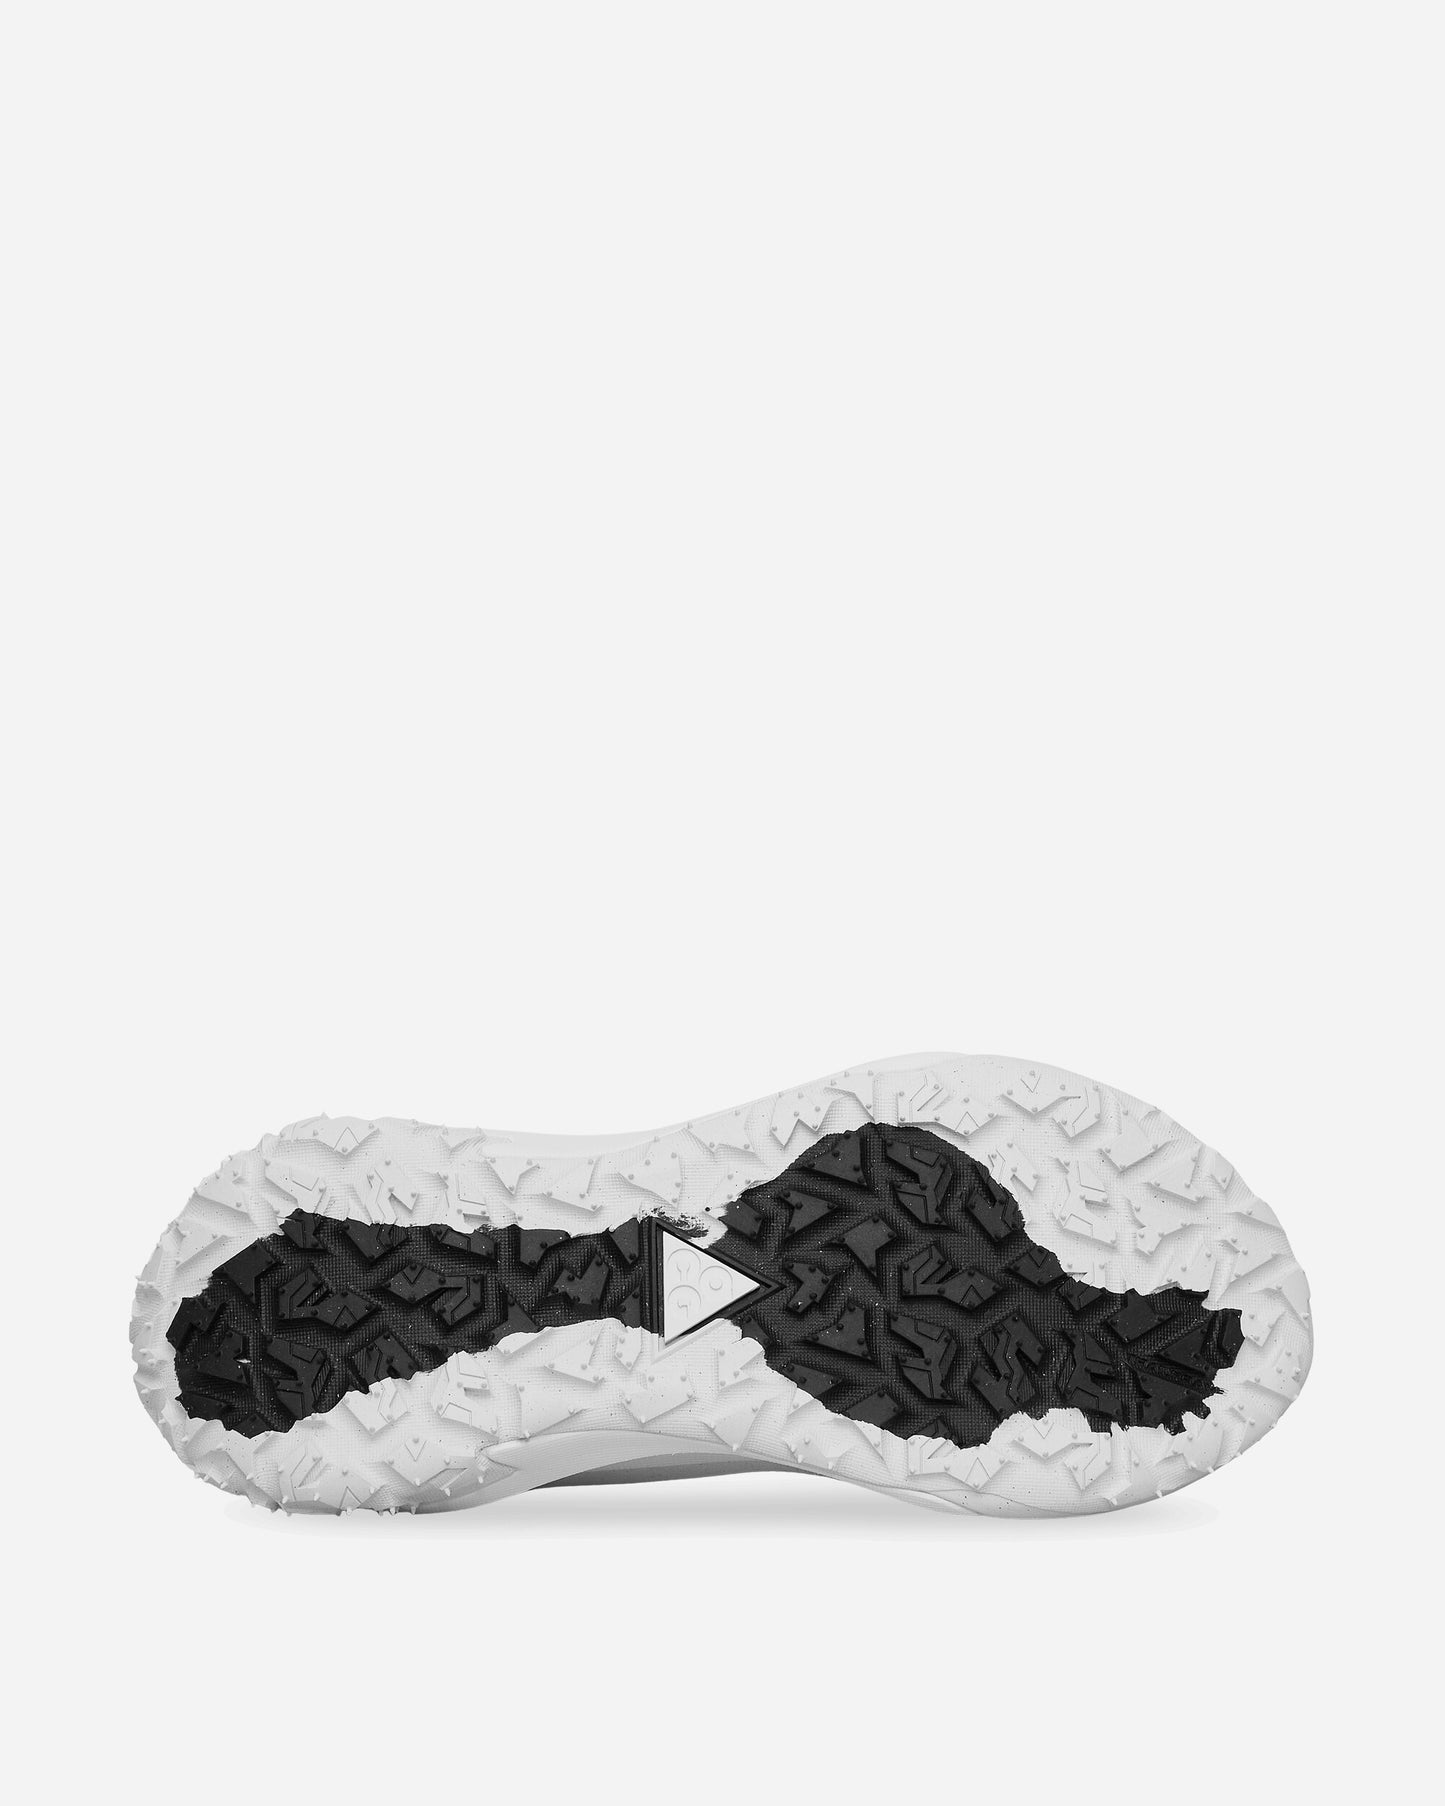 Comme Des Garçons Homme Plus Men'S Shoes X Nike Acg Mountain White Sneakers Low PM-K105-S24 2